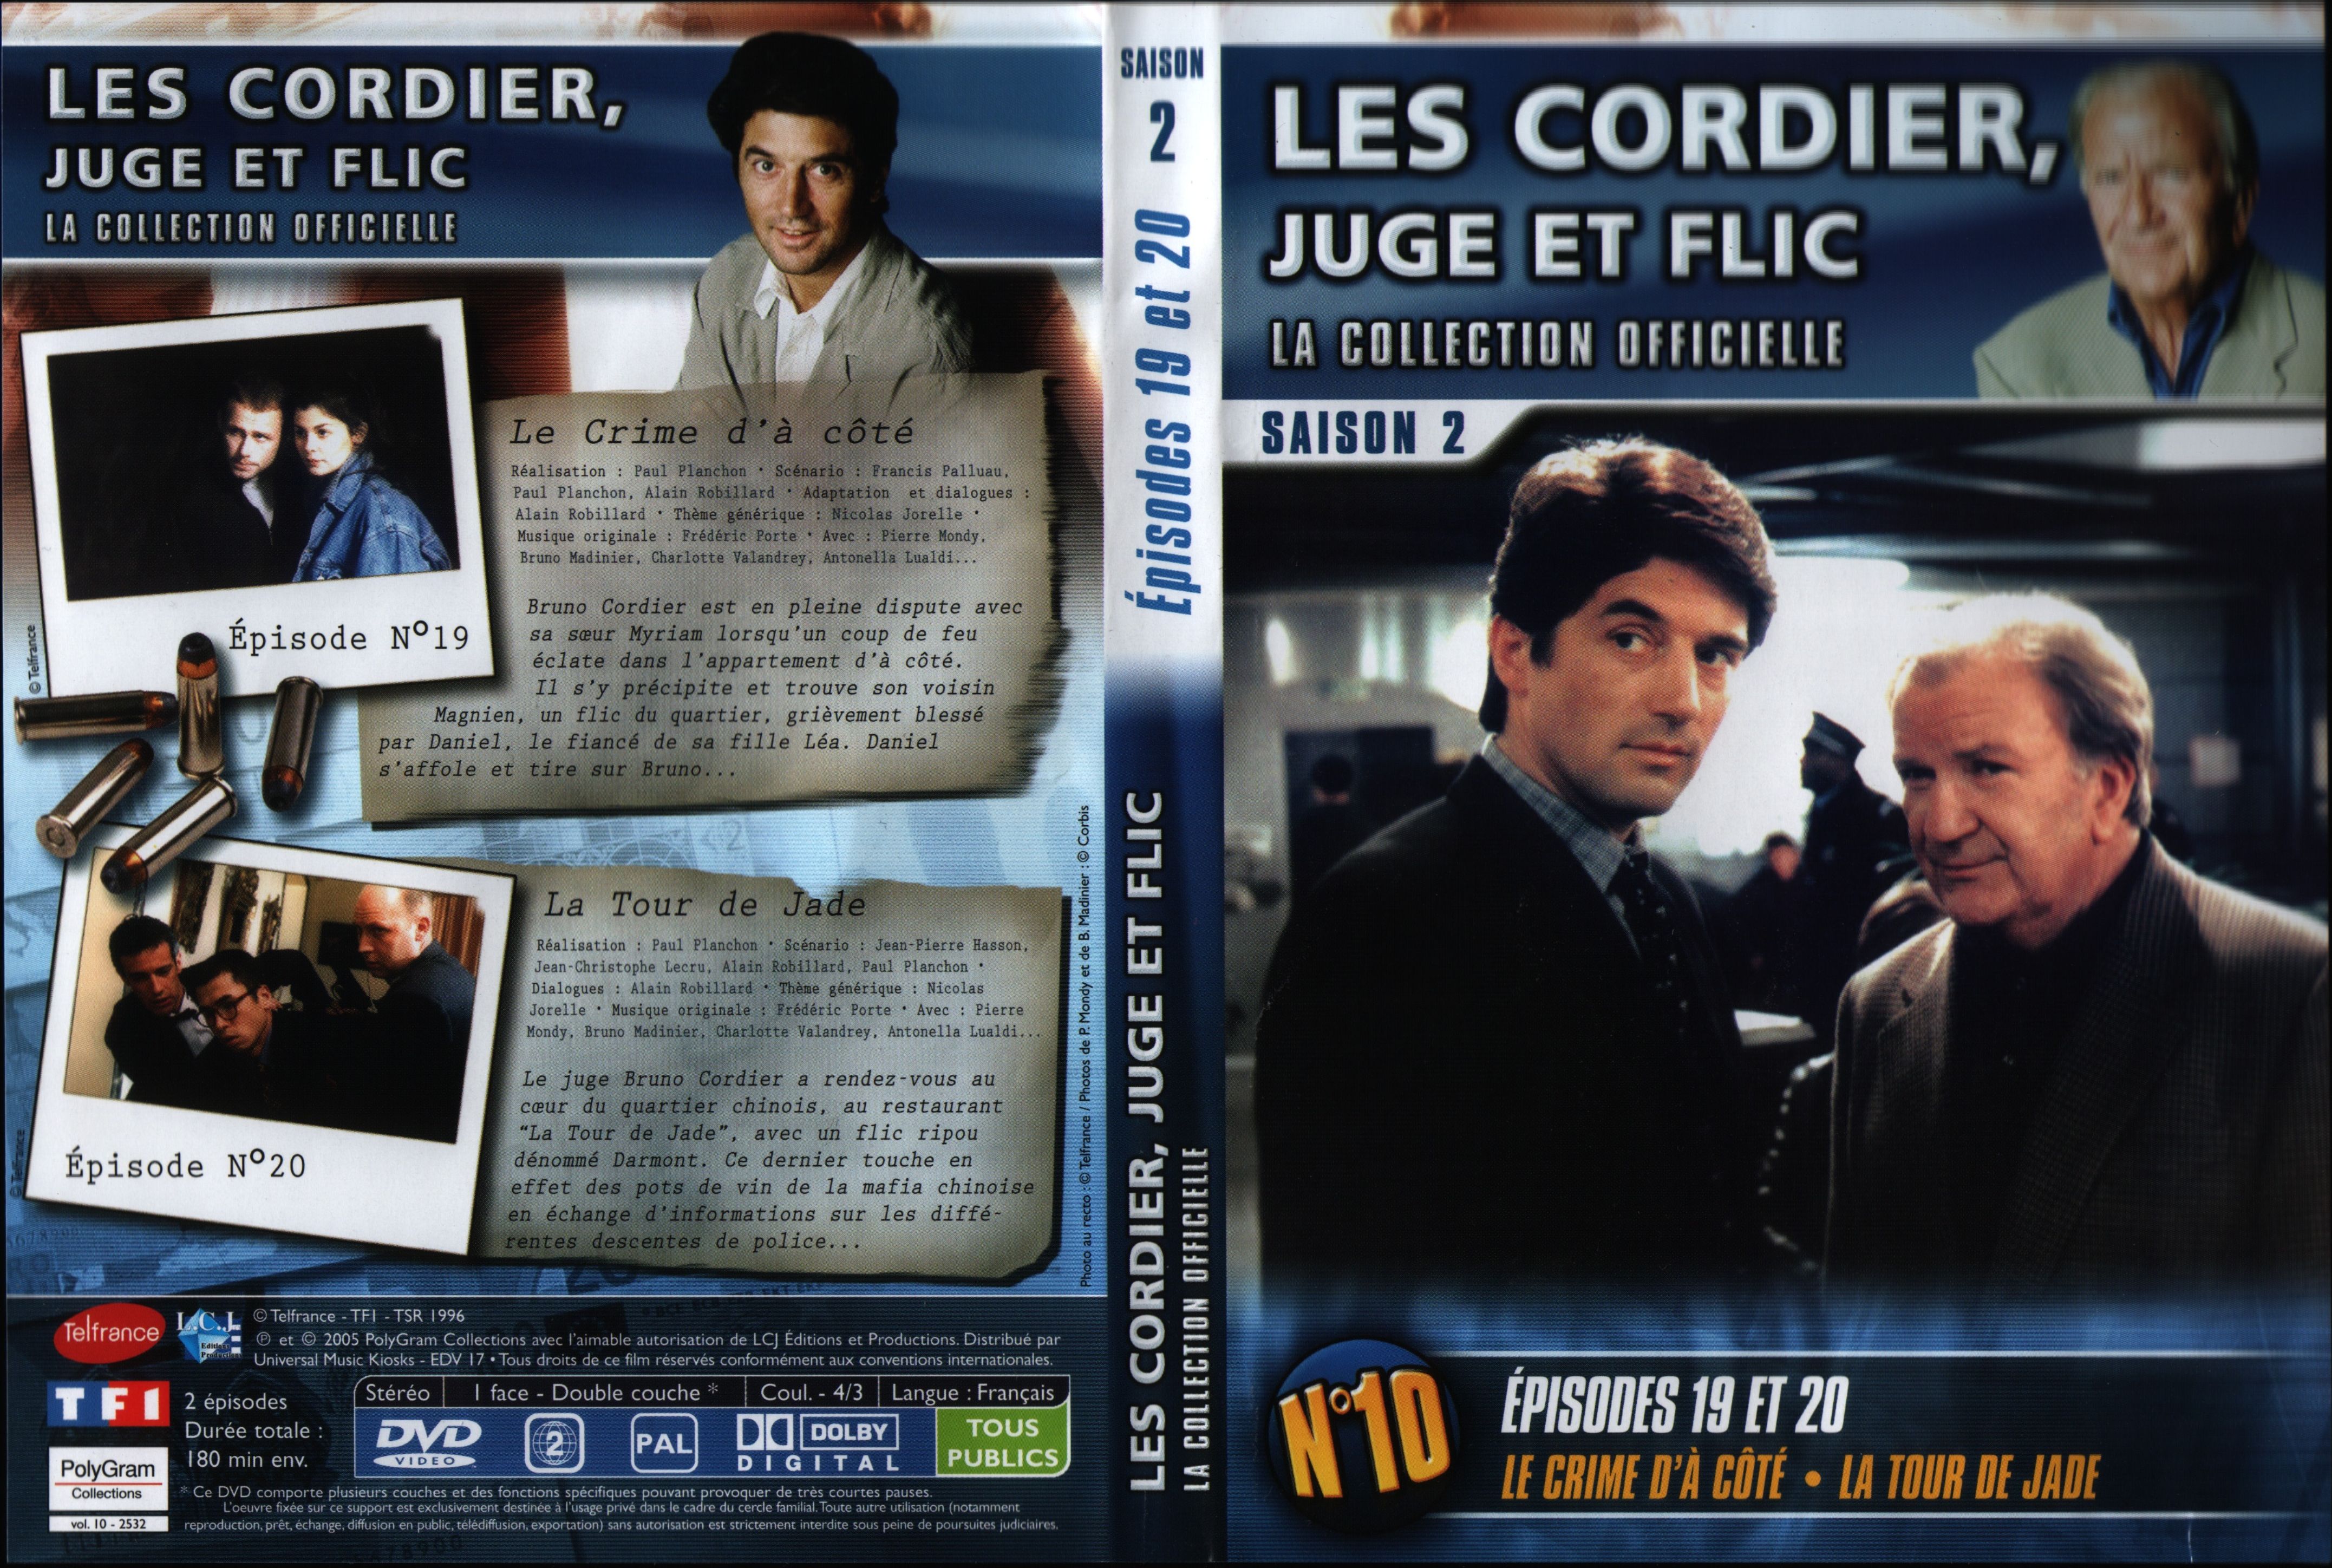 Jaquette DVD Les cordier juge et flic Saison 2 vol 10